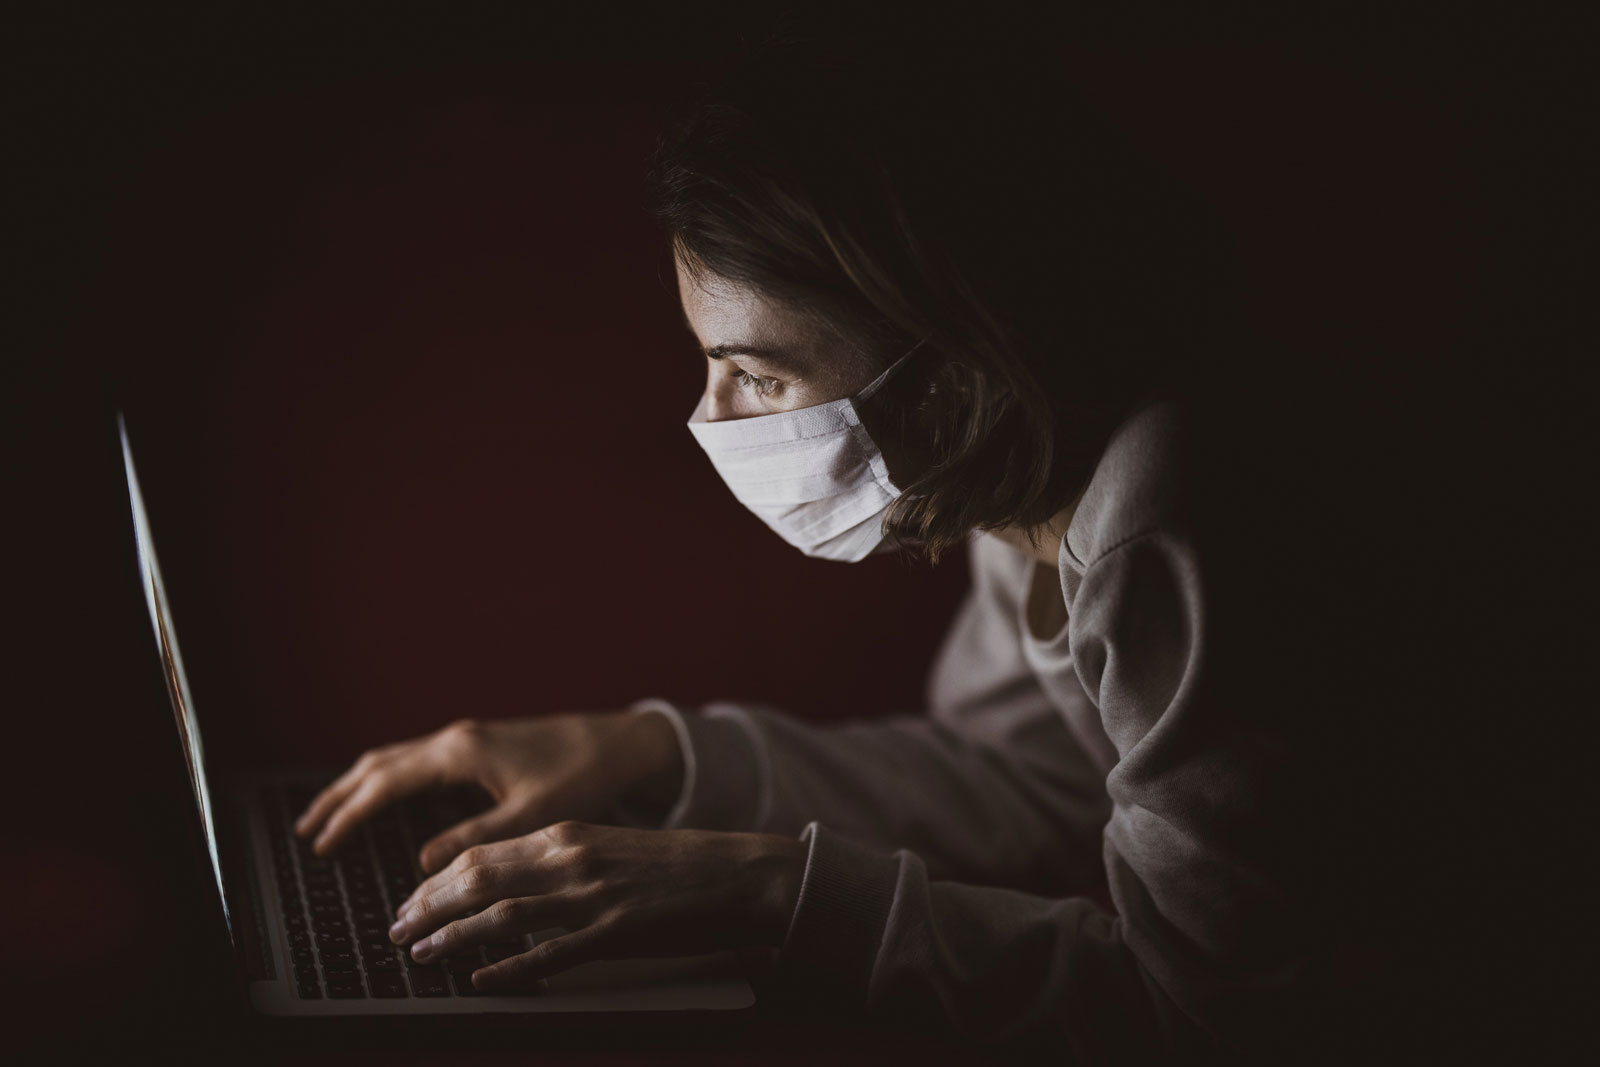 pessoa acessando o computador utilizando máscara buscando inovação durante a pandemia de coronavírus